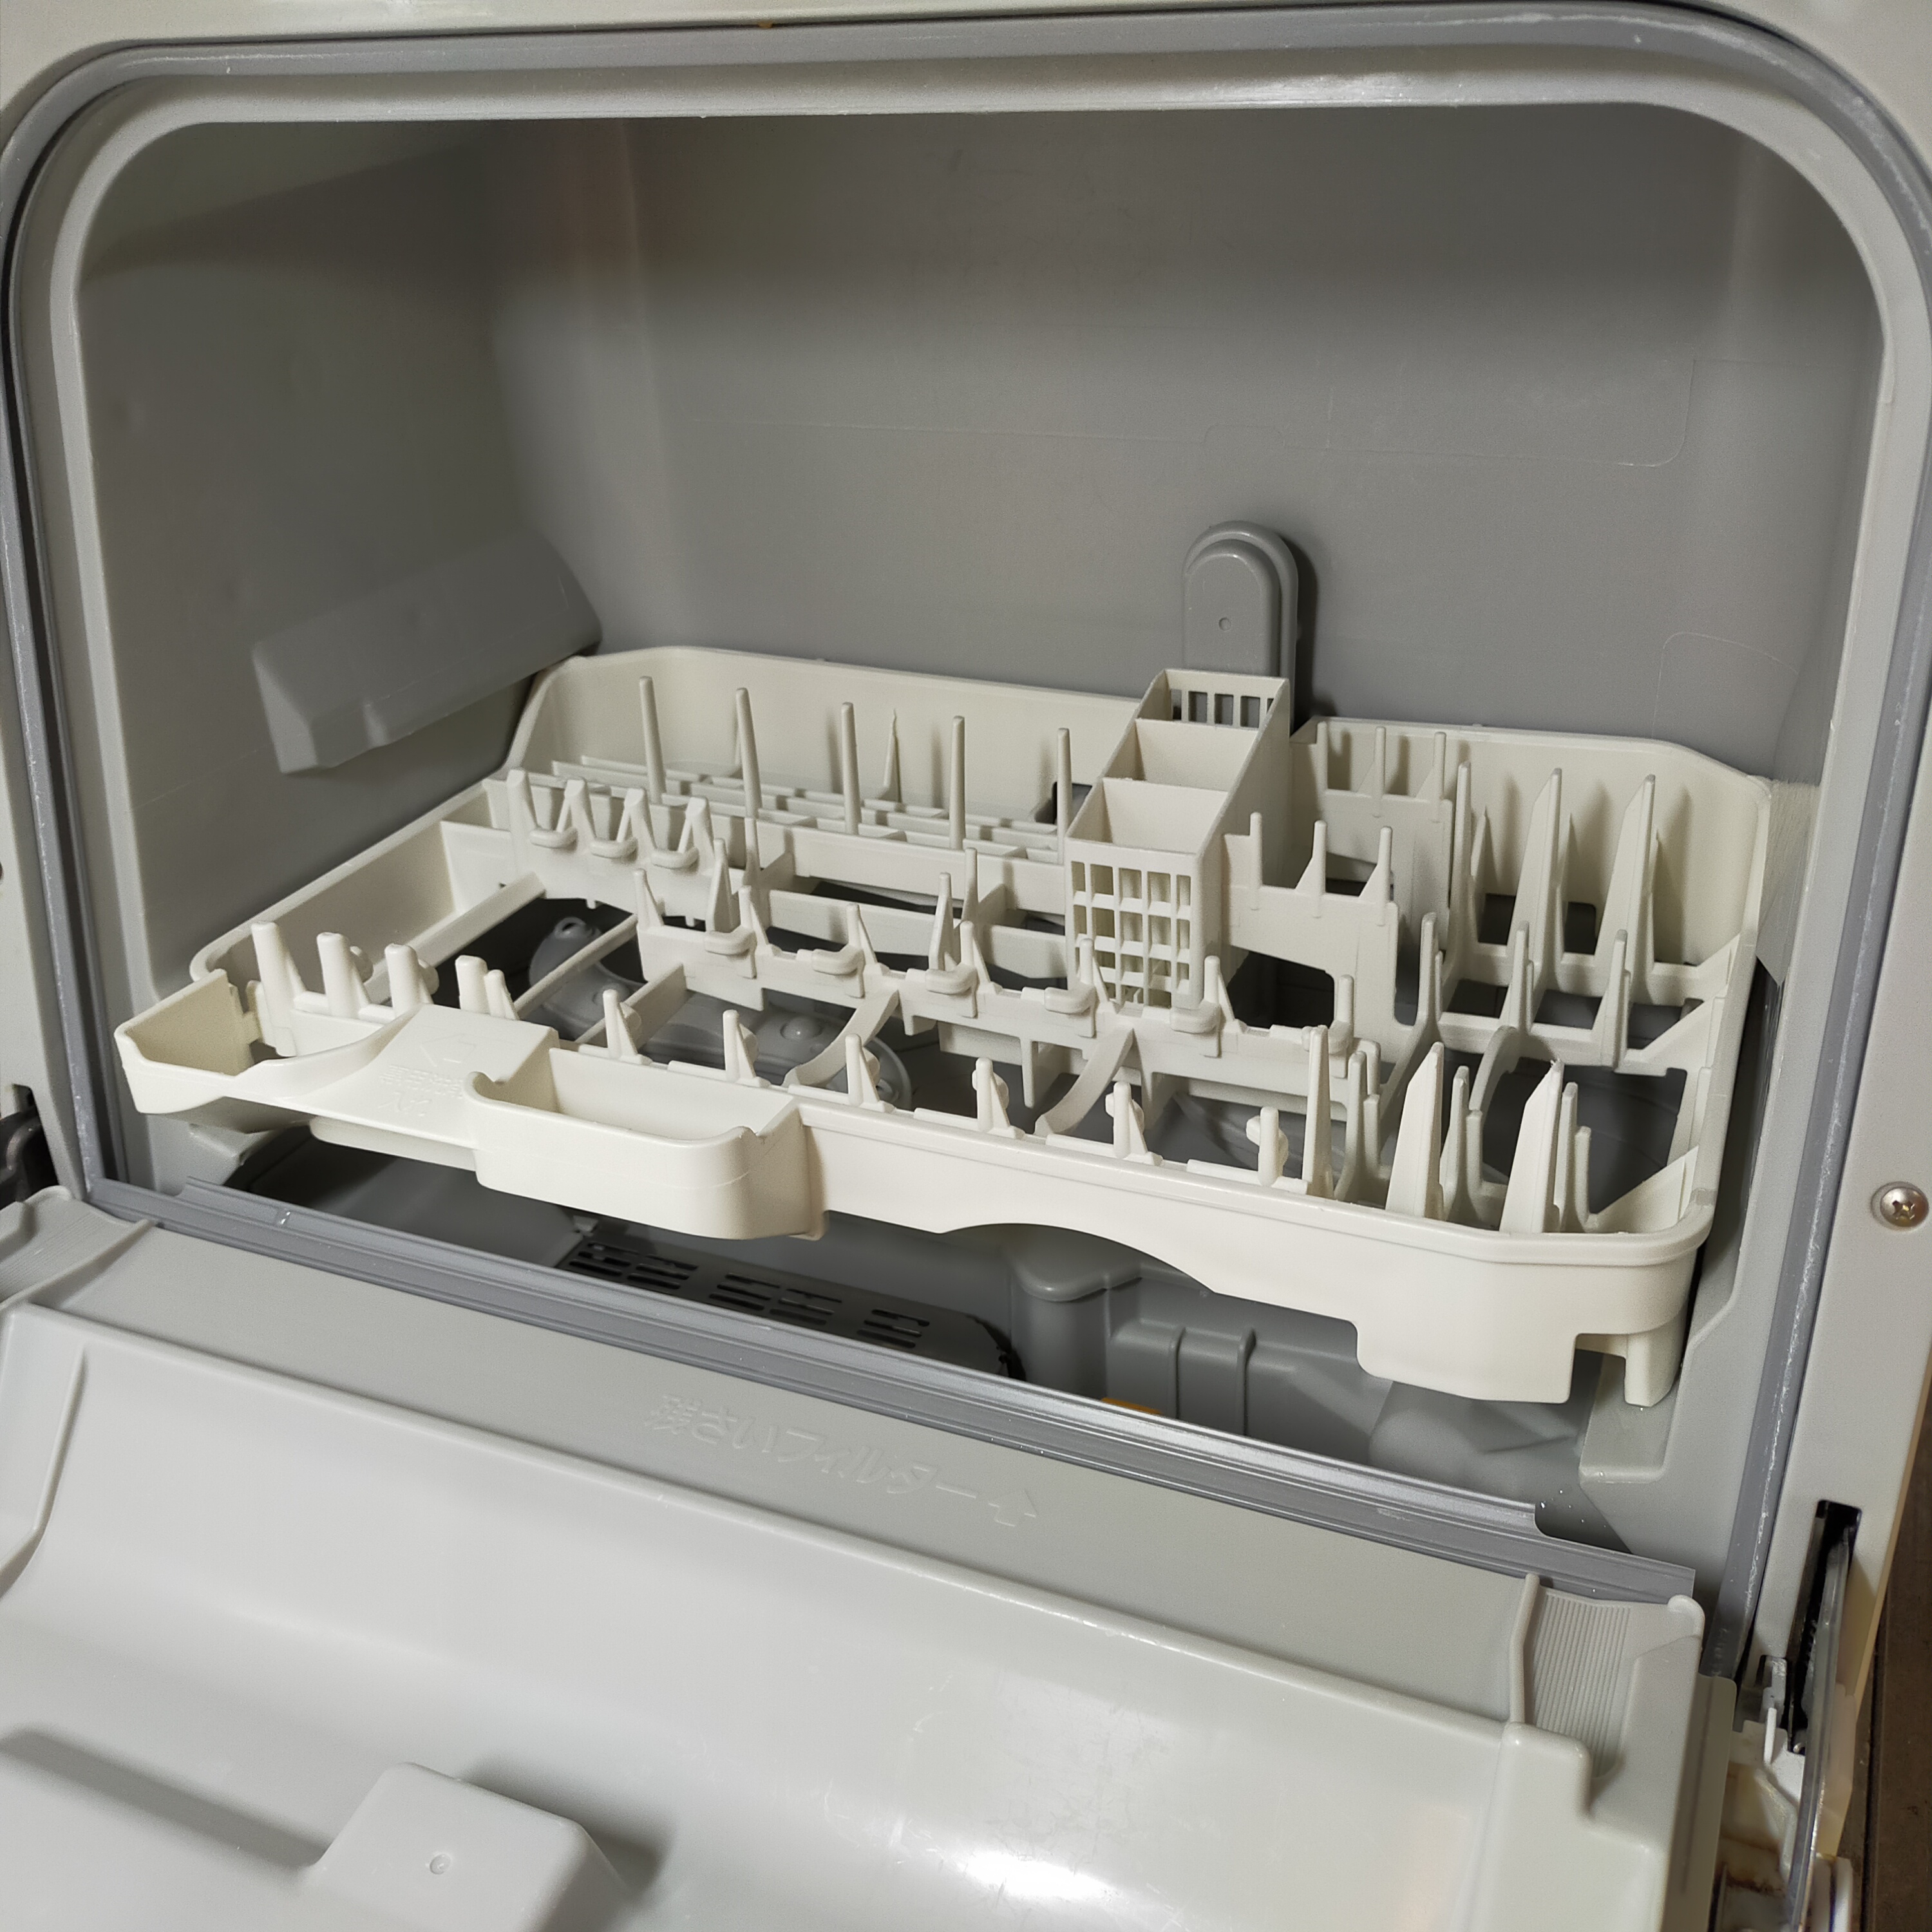 Panasonic(パナソニック) 食器洗い乾燥機 NP-TCR3-W(ホワイト)の良い点・メリットに関するCHISa0さんの口コミ画像2